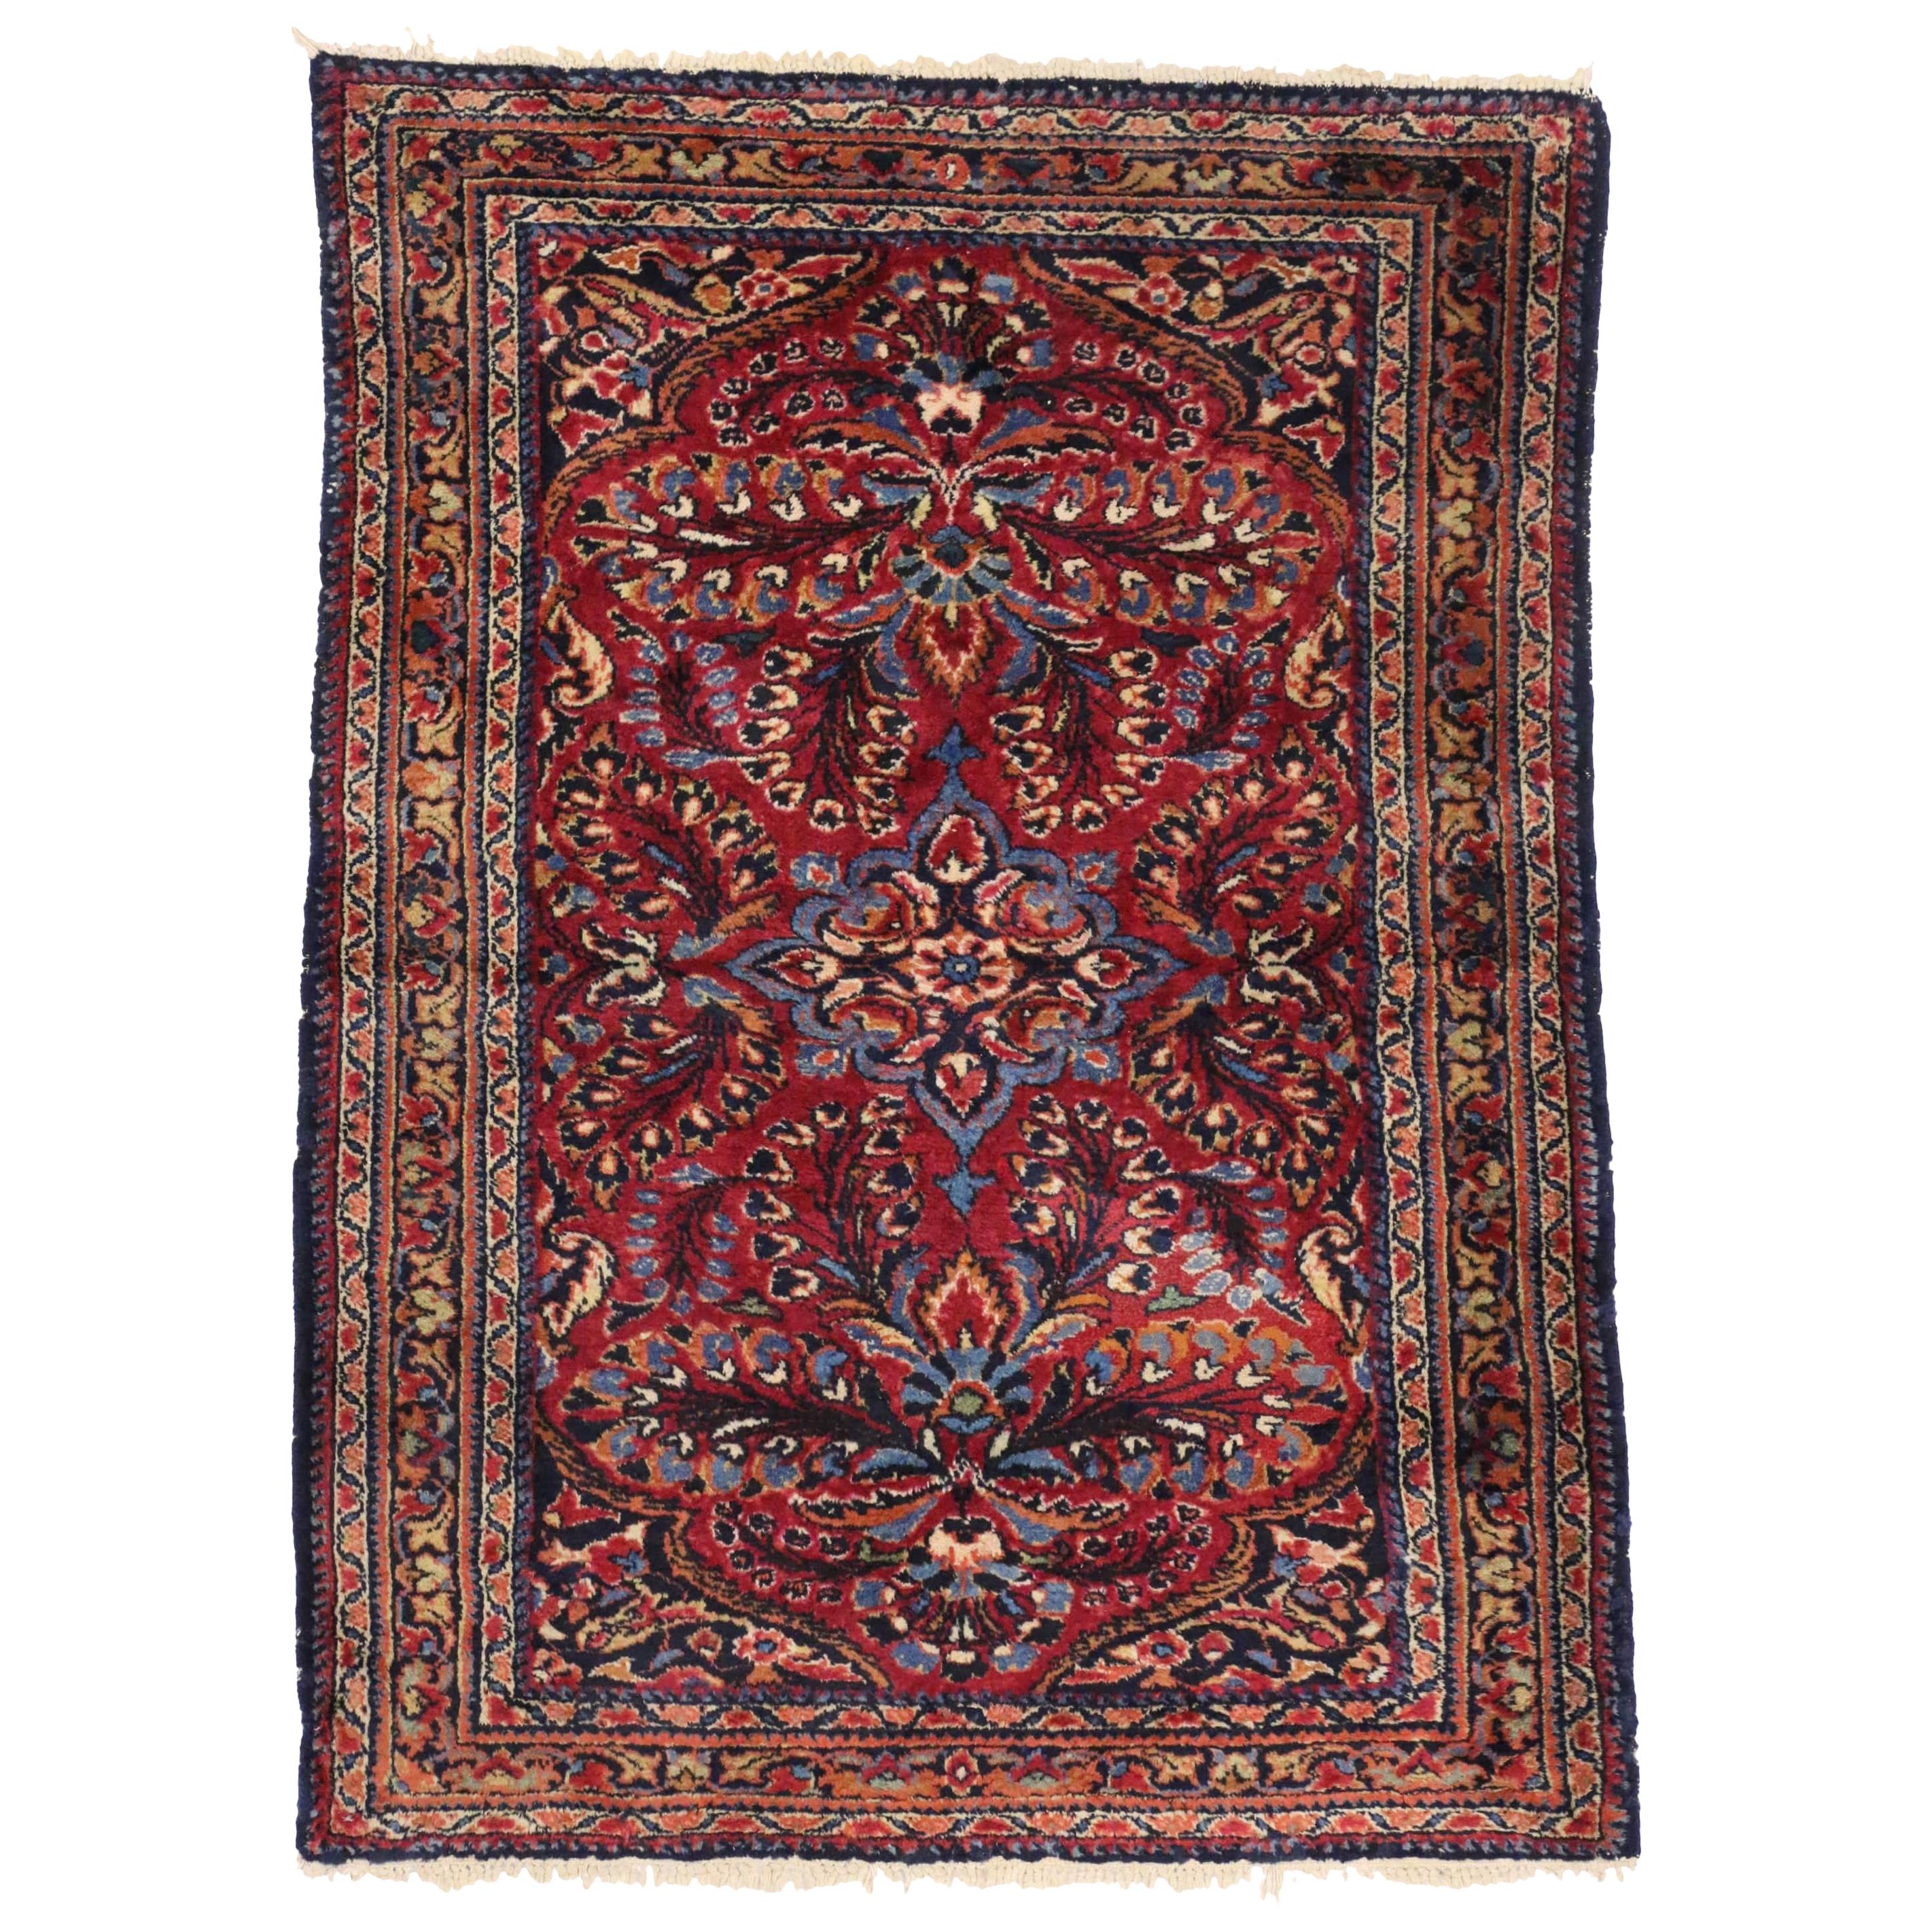 Tapis persan ancien Lilihan avec tapis coquelicot de style jacobéen